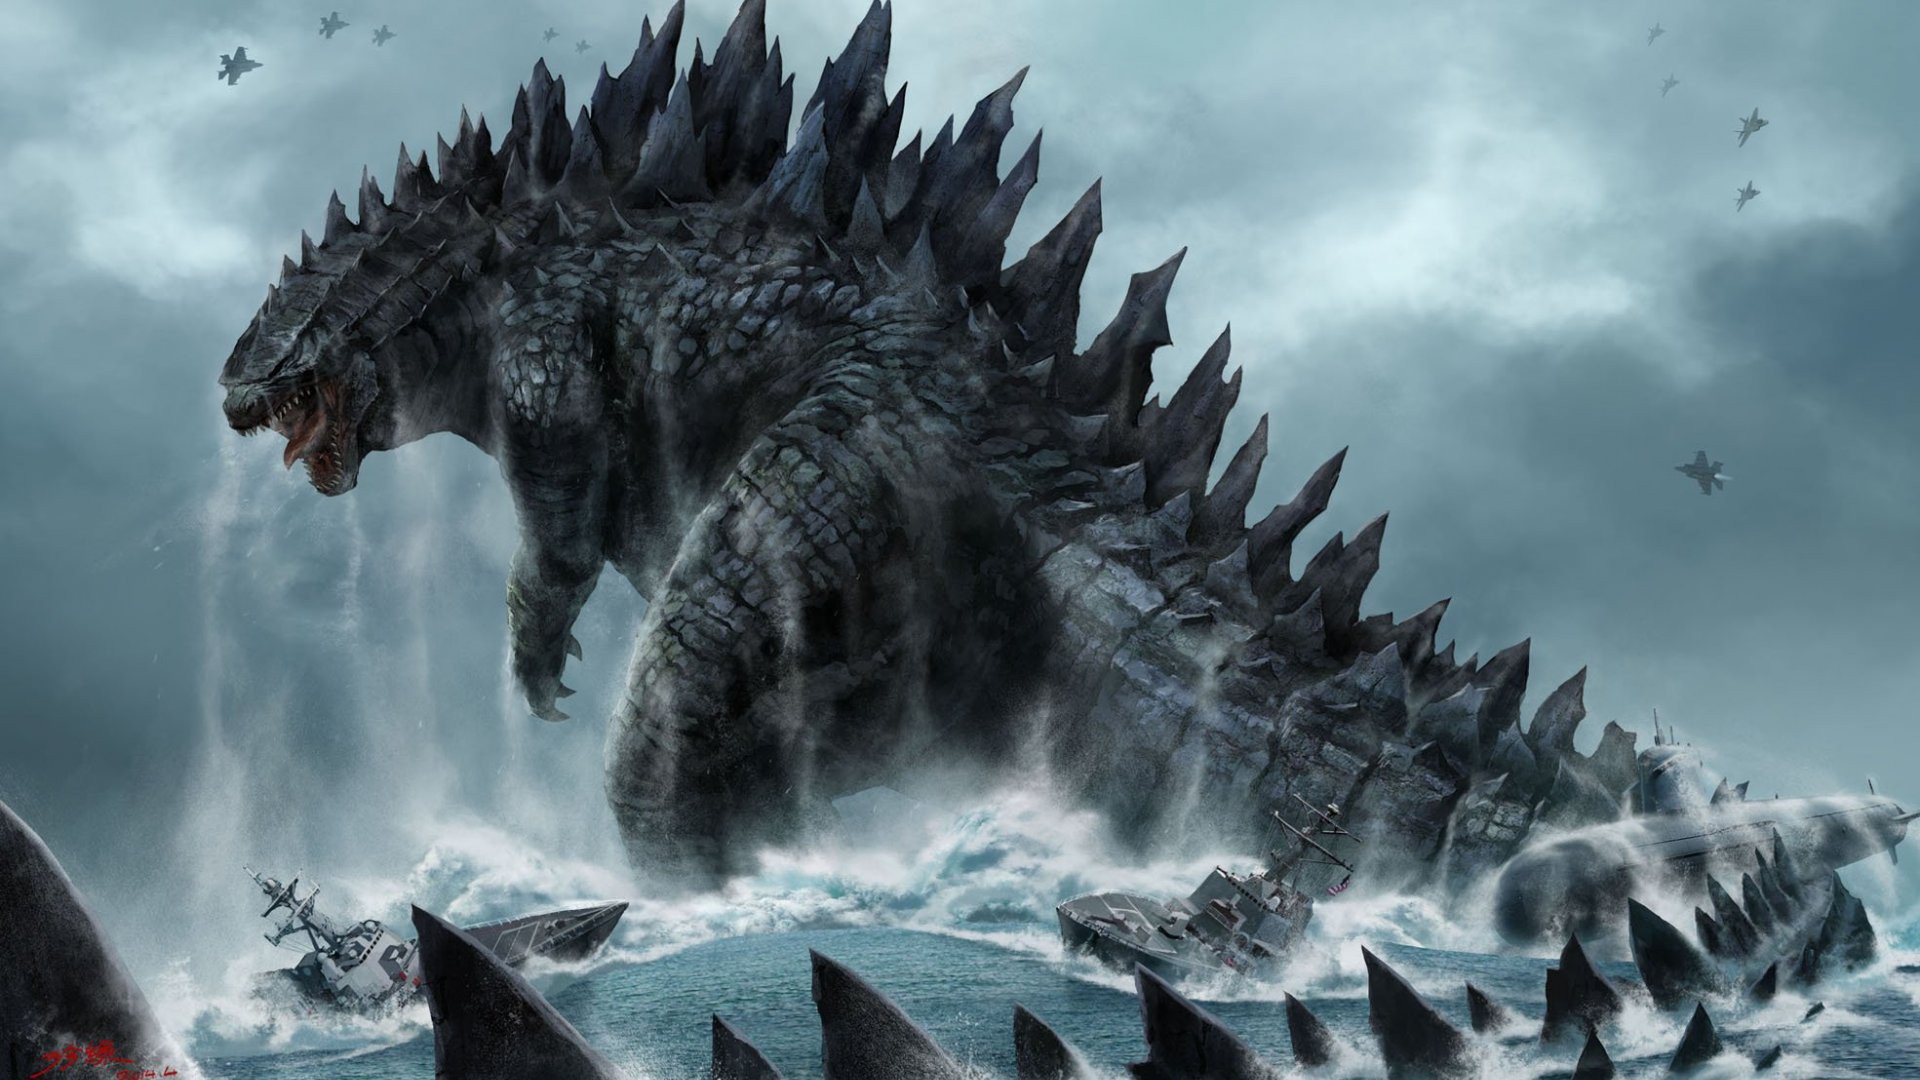 Siêu quái vật Godzilla - Nếu bạn là một fan của siêu quái vật huyền thoại, thì bạn không thể bỏ qua các hình ảnh về Godzilla. Khám phá những khía cạnh đặc biệt của nó, những chi tiết về hình dáng và đường nét của siêu quái vật thần thoại đầu tiên trên trái đất. Cùng khám phá bí ẩn của Godzilla ngay hôm nay!